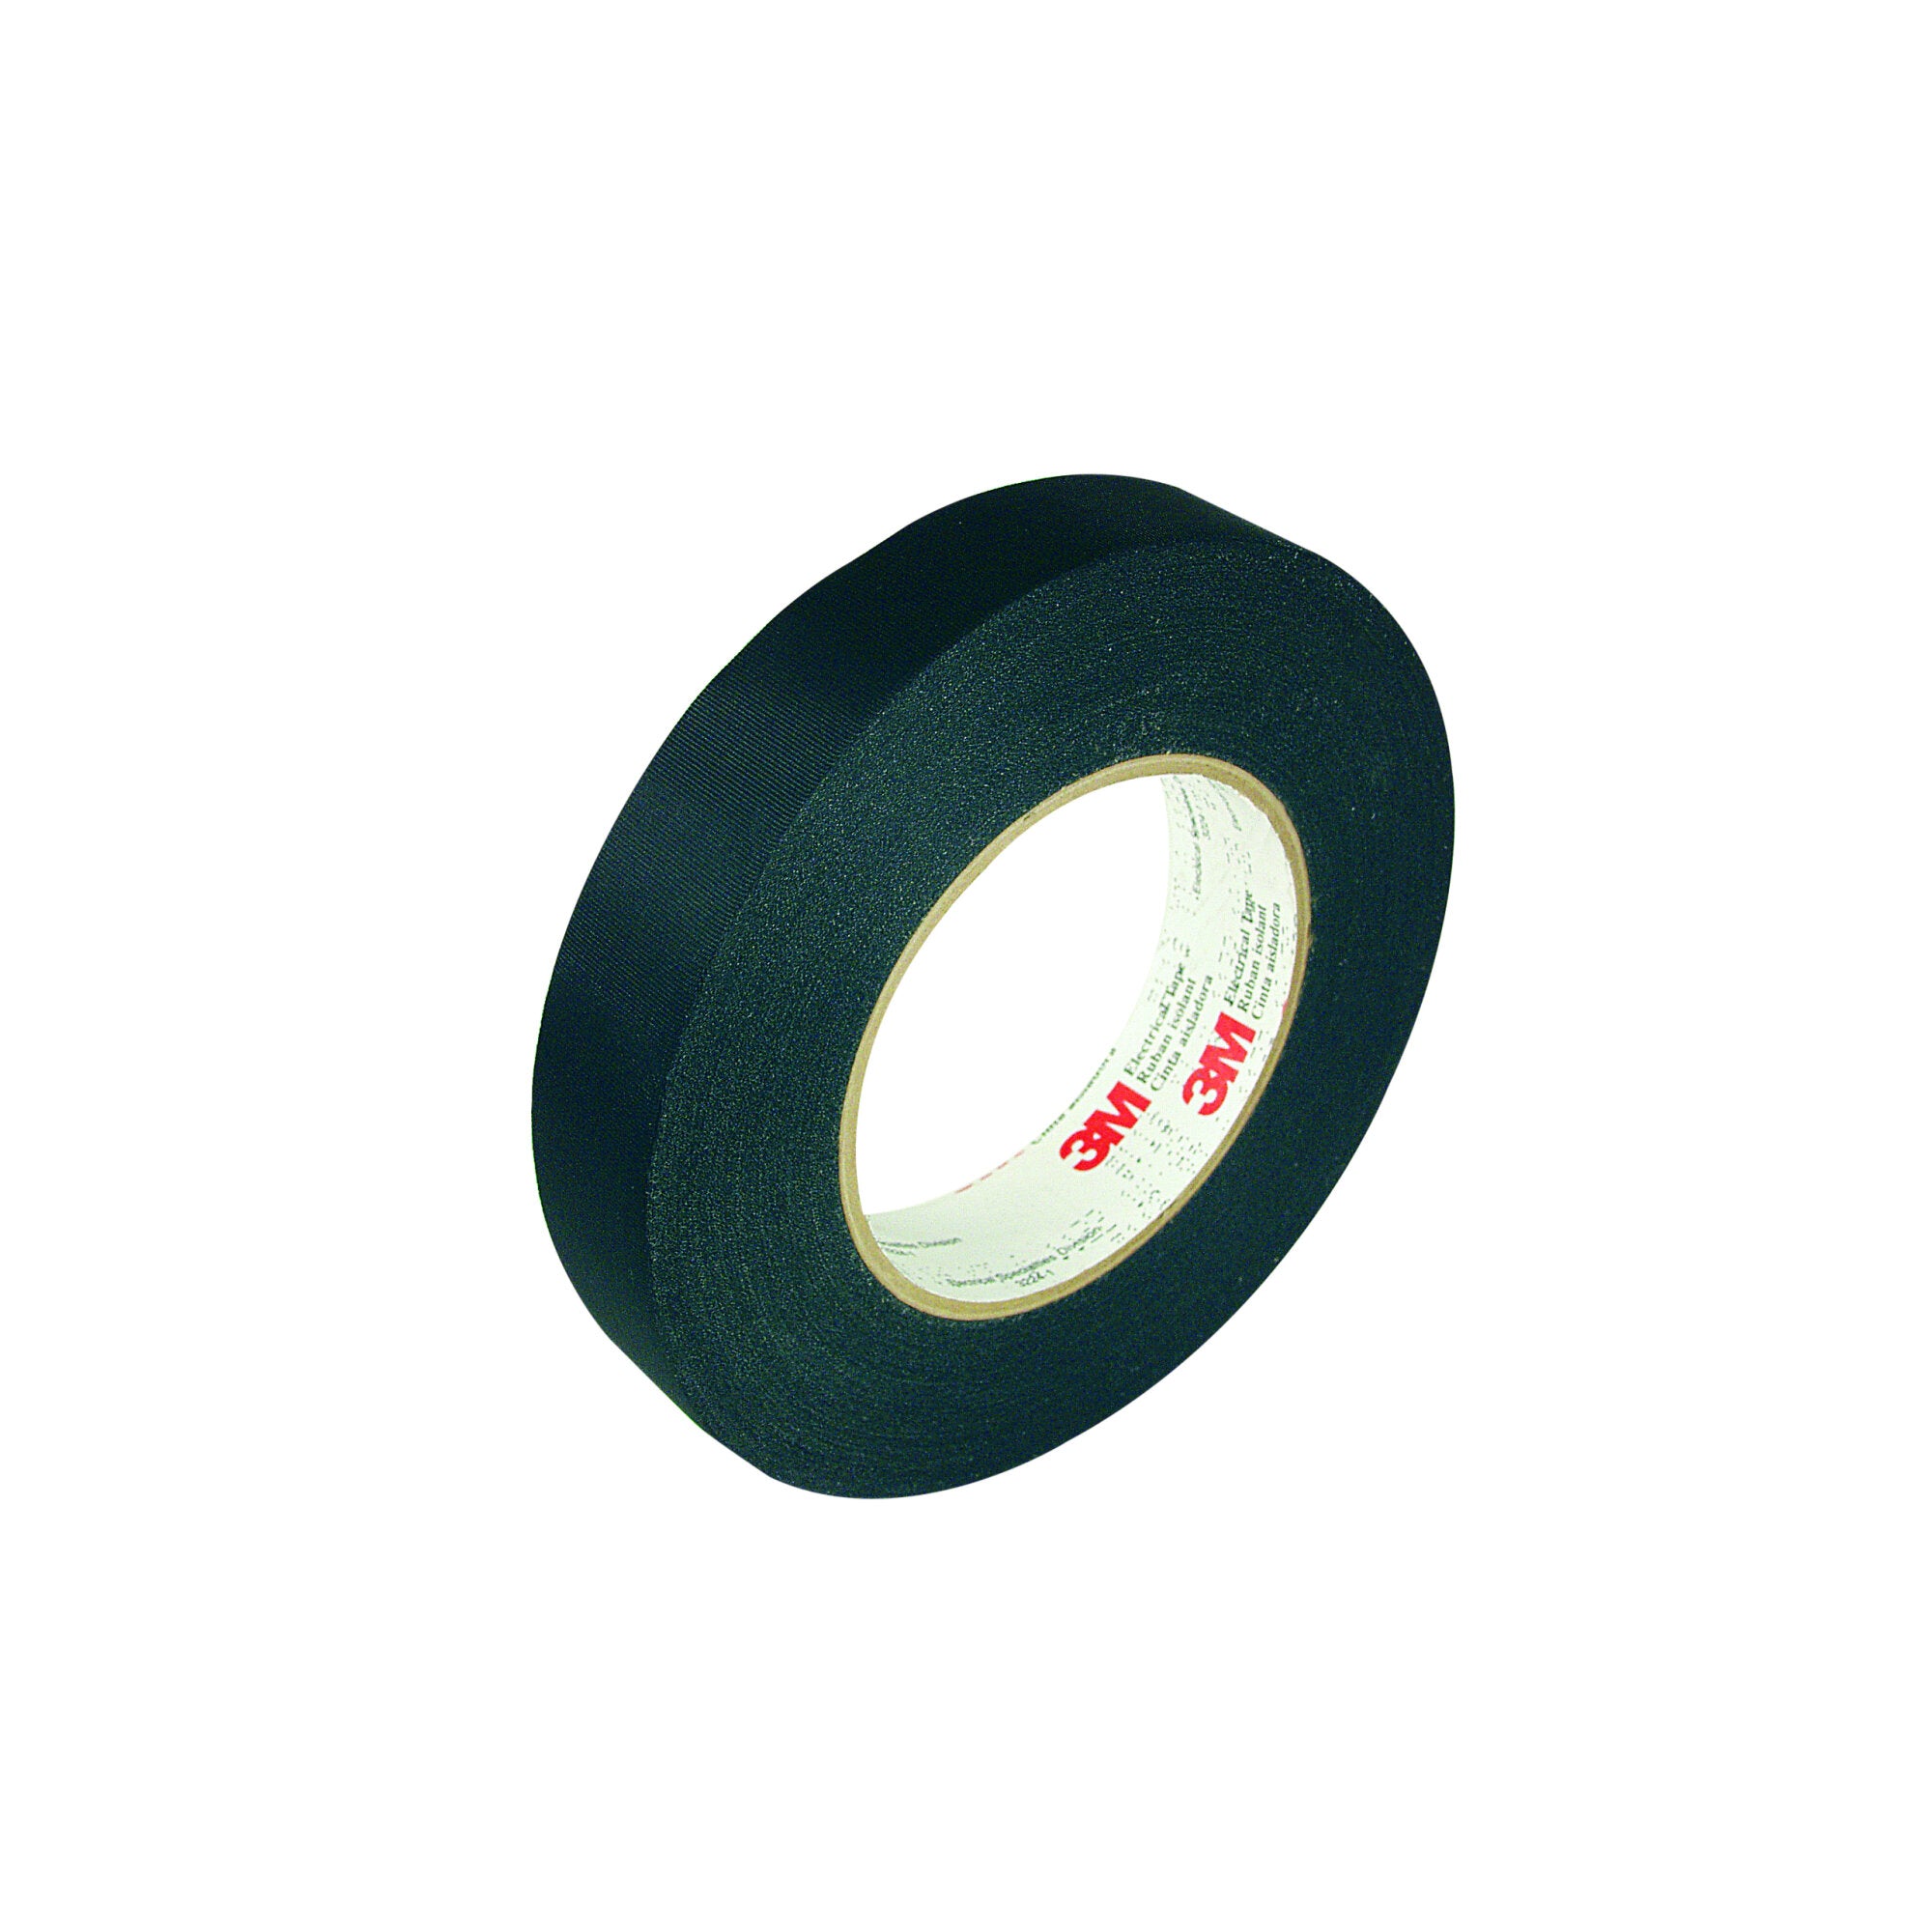 3M Acetate Cloth Electrical Tape 11, 1-1/2 in x 72 yd, 3 in Paper Core,
Bulk